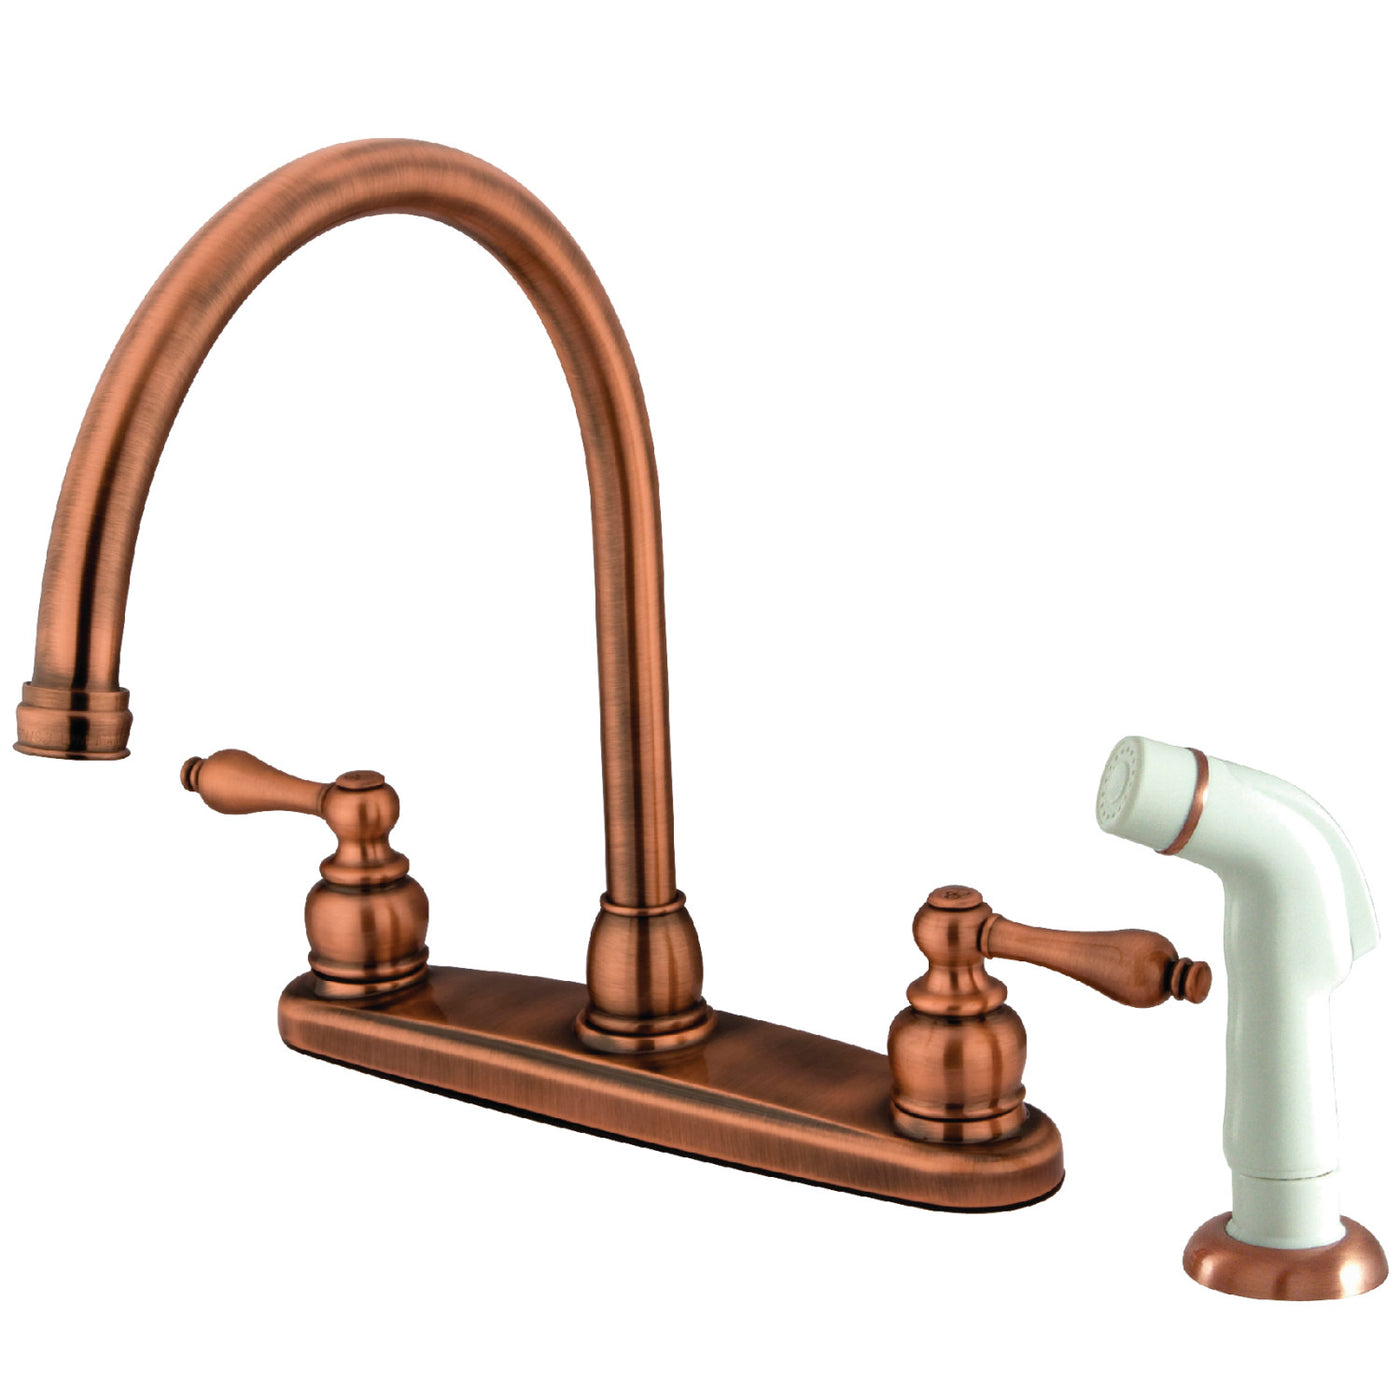 Elements of Design EB726AL Centerset Kitchen Faucet, Antique Copper